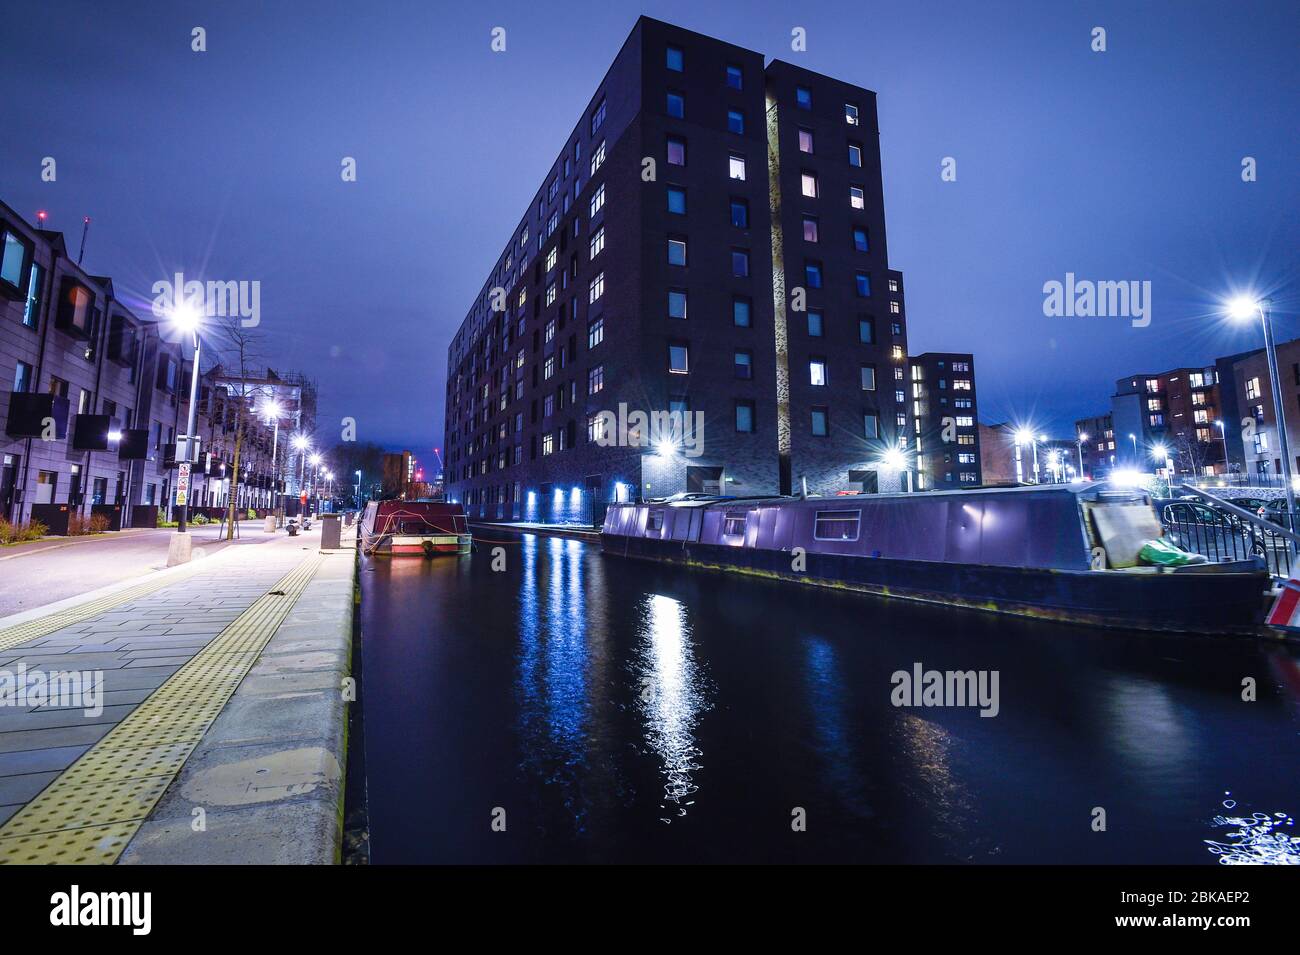 Ein Blick auf die Wohnung auf dem Cottonfield Wharf Estate, Ancoats, Manchester. Stockfoto